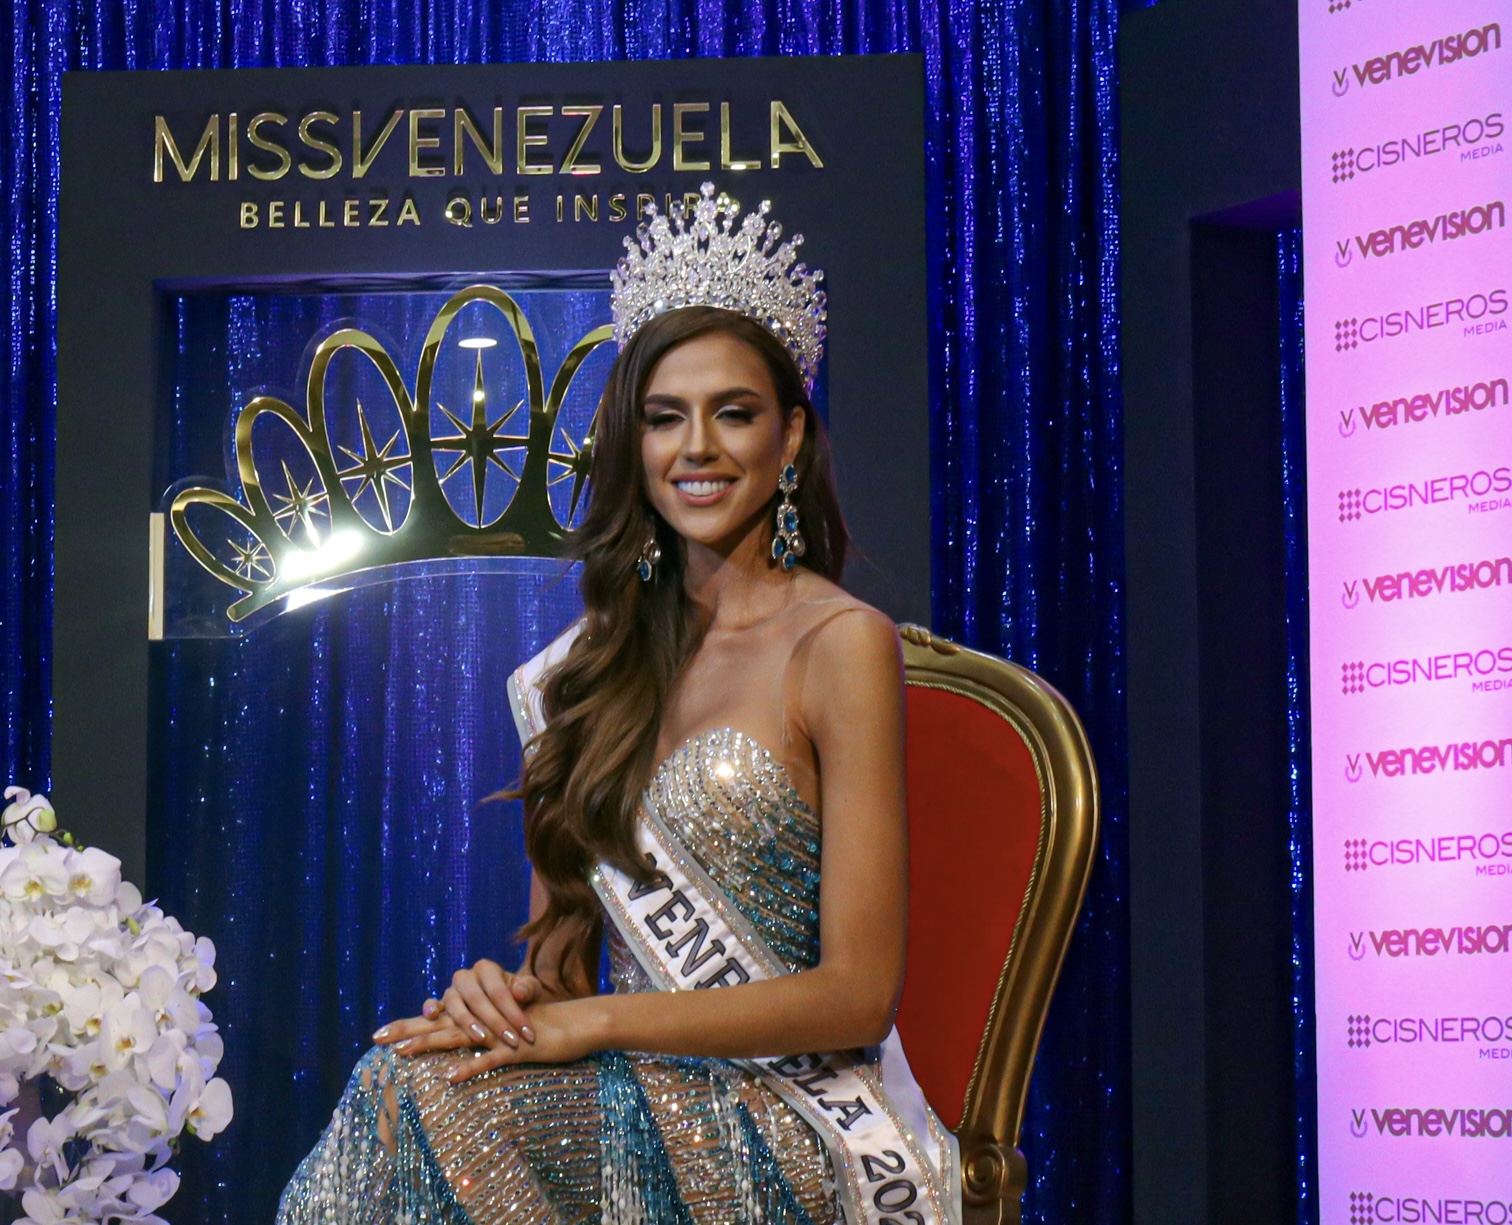 Continúa la polémica con el jurado del Miss Venezuela: No nos pongan a perder el tiempo, es falta de respeto